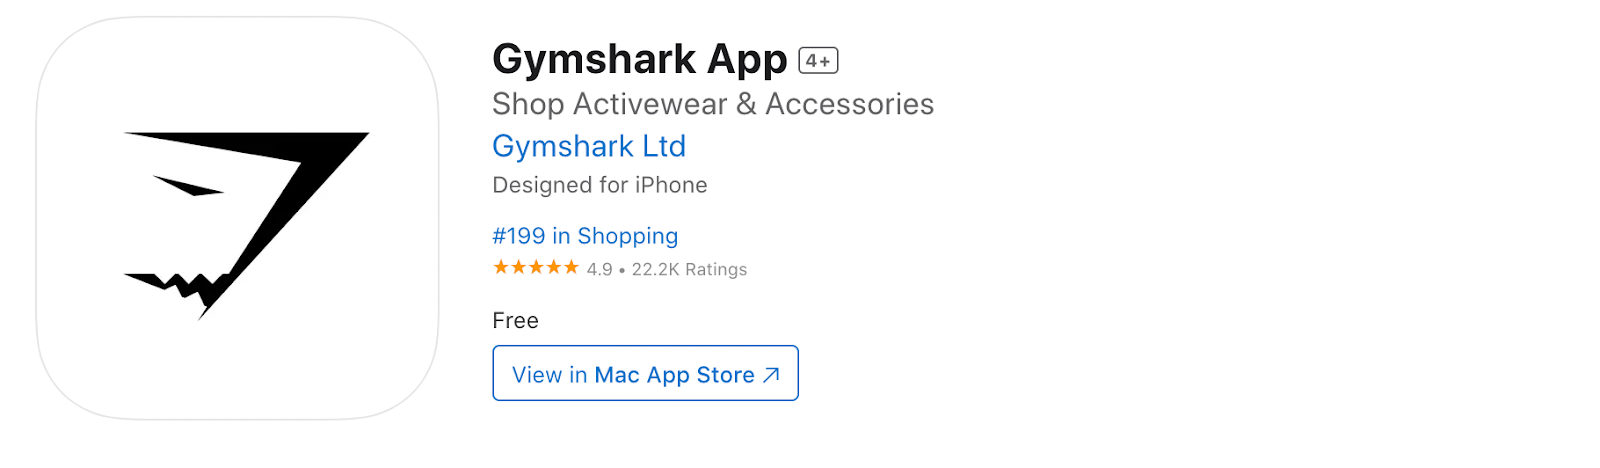 Gymshark app- App Store